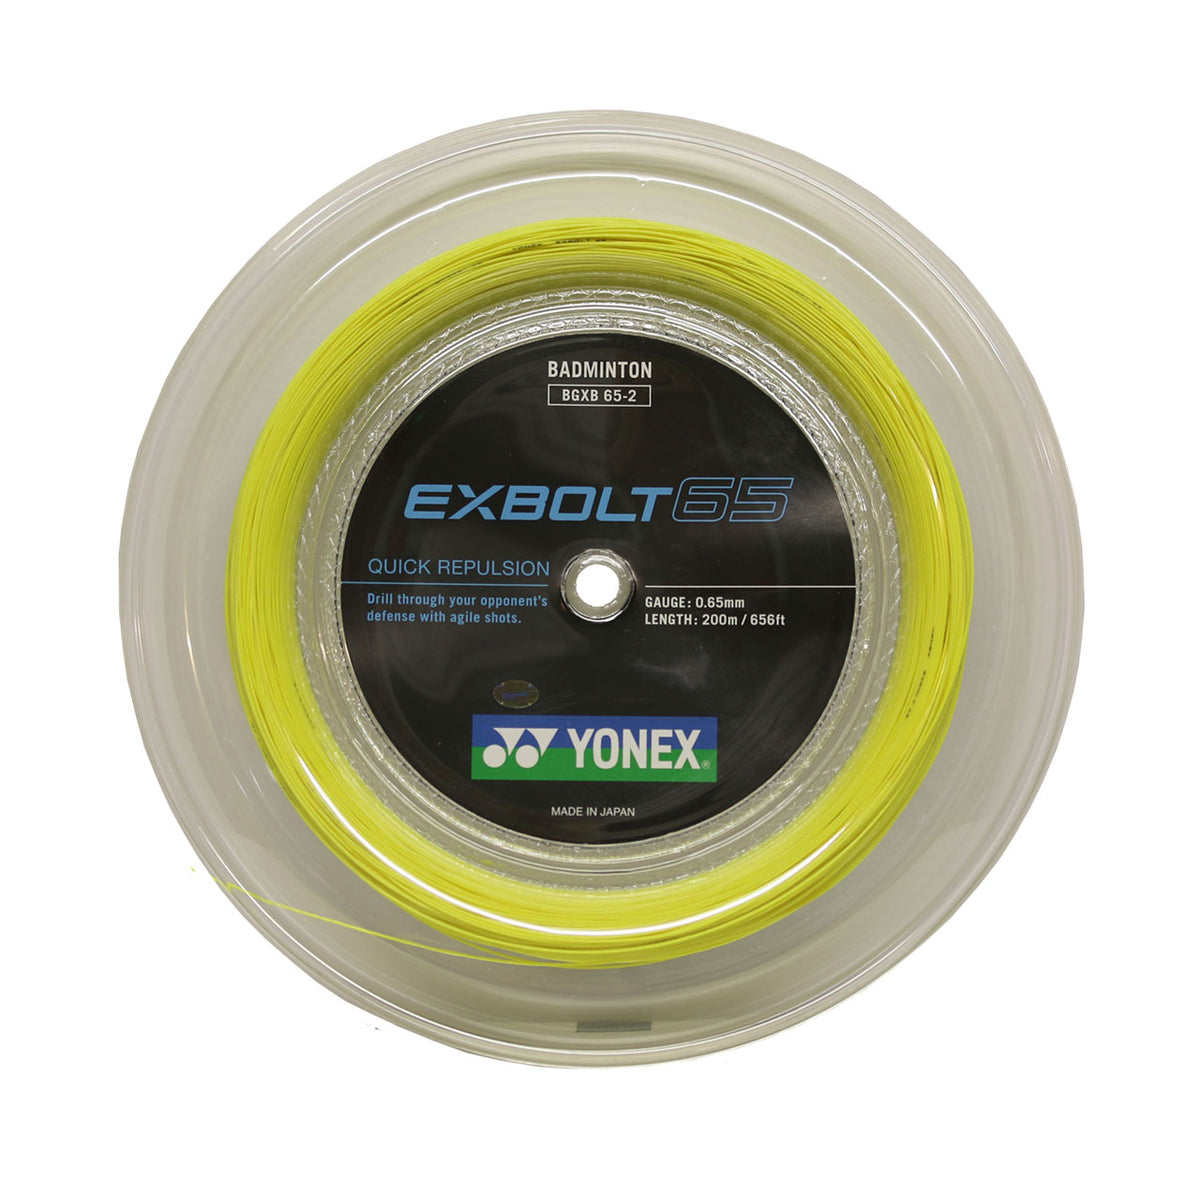 YONEX EX BOLT 65 弦（200 米卷线器）黄色